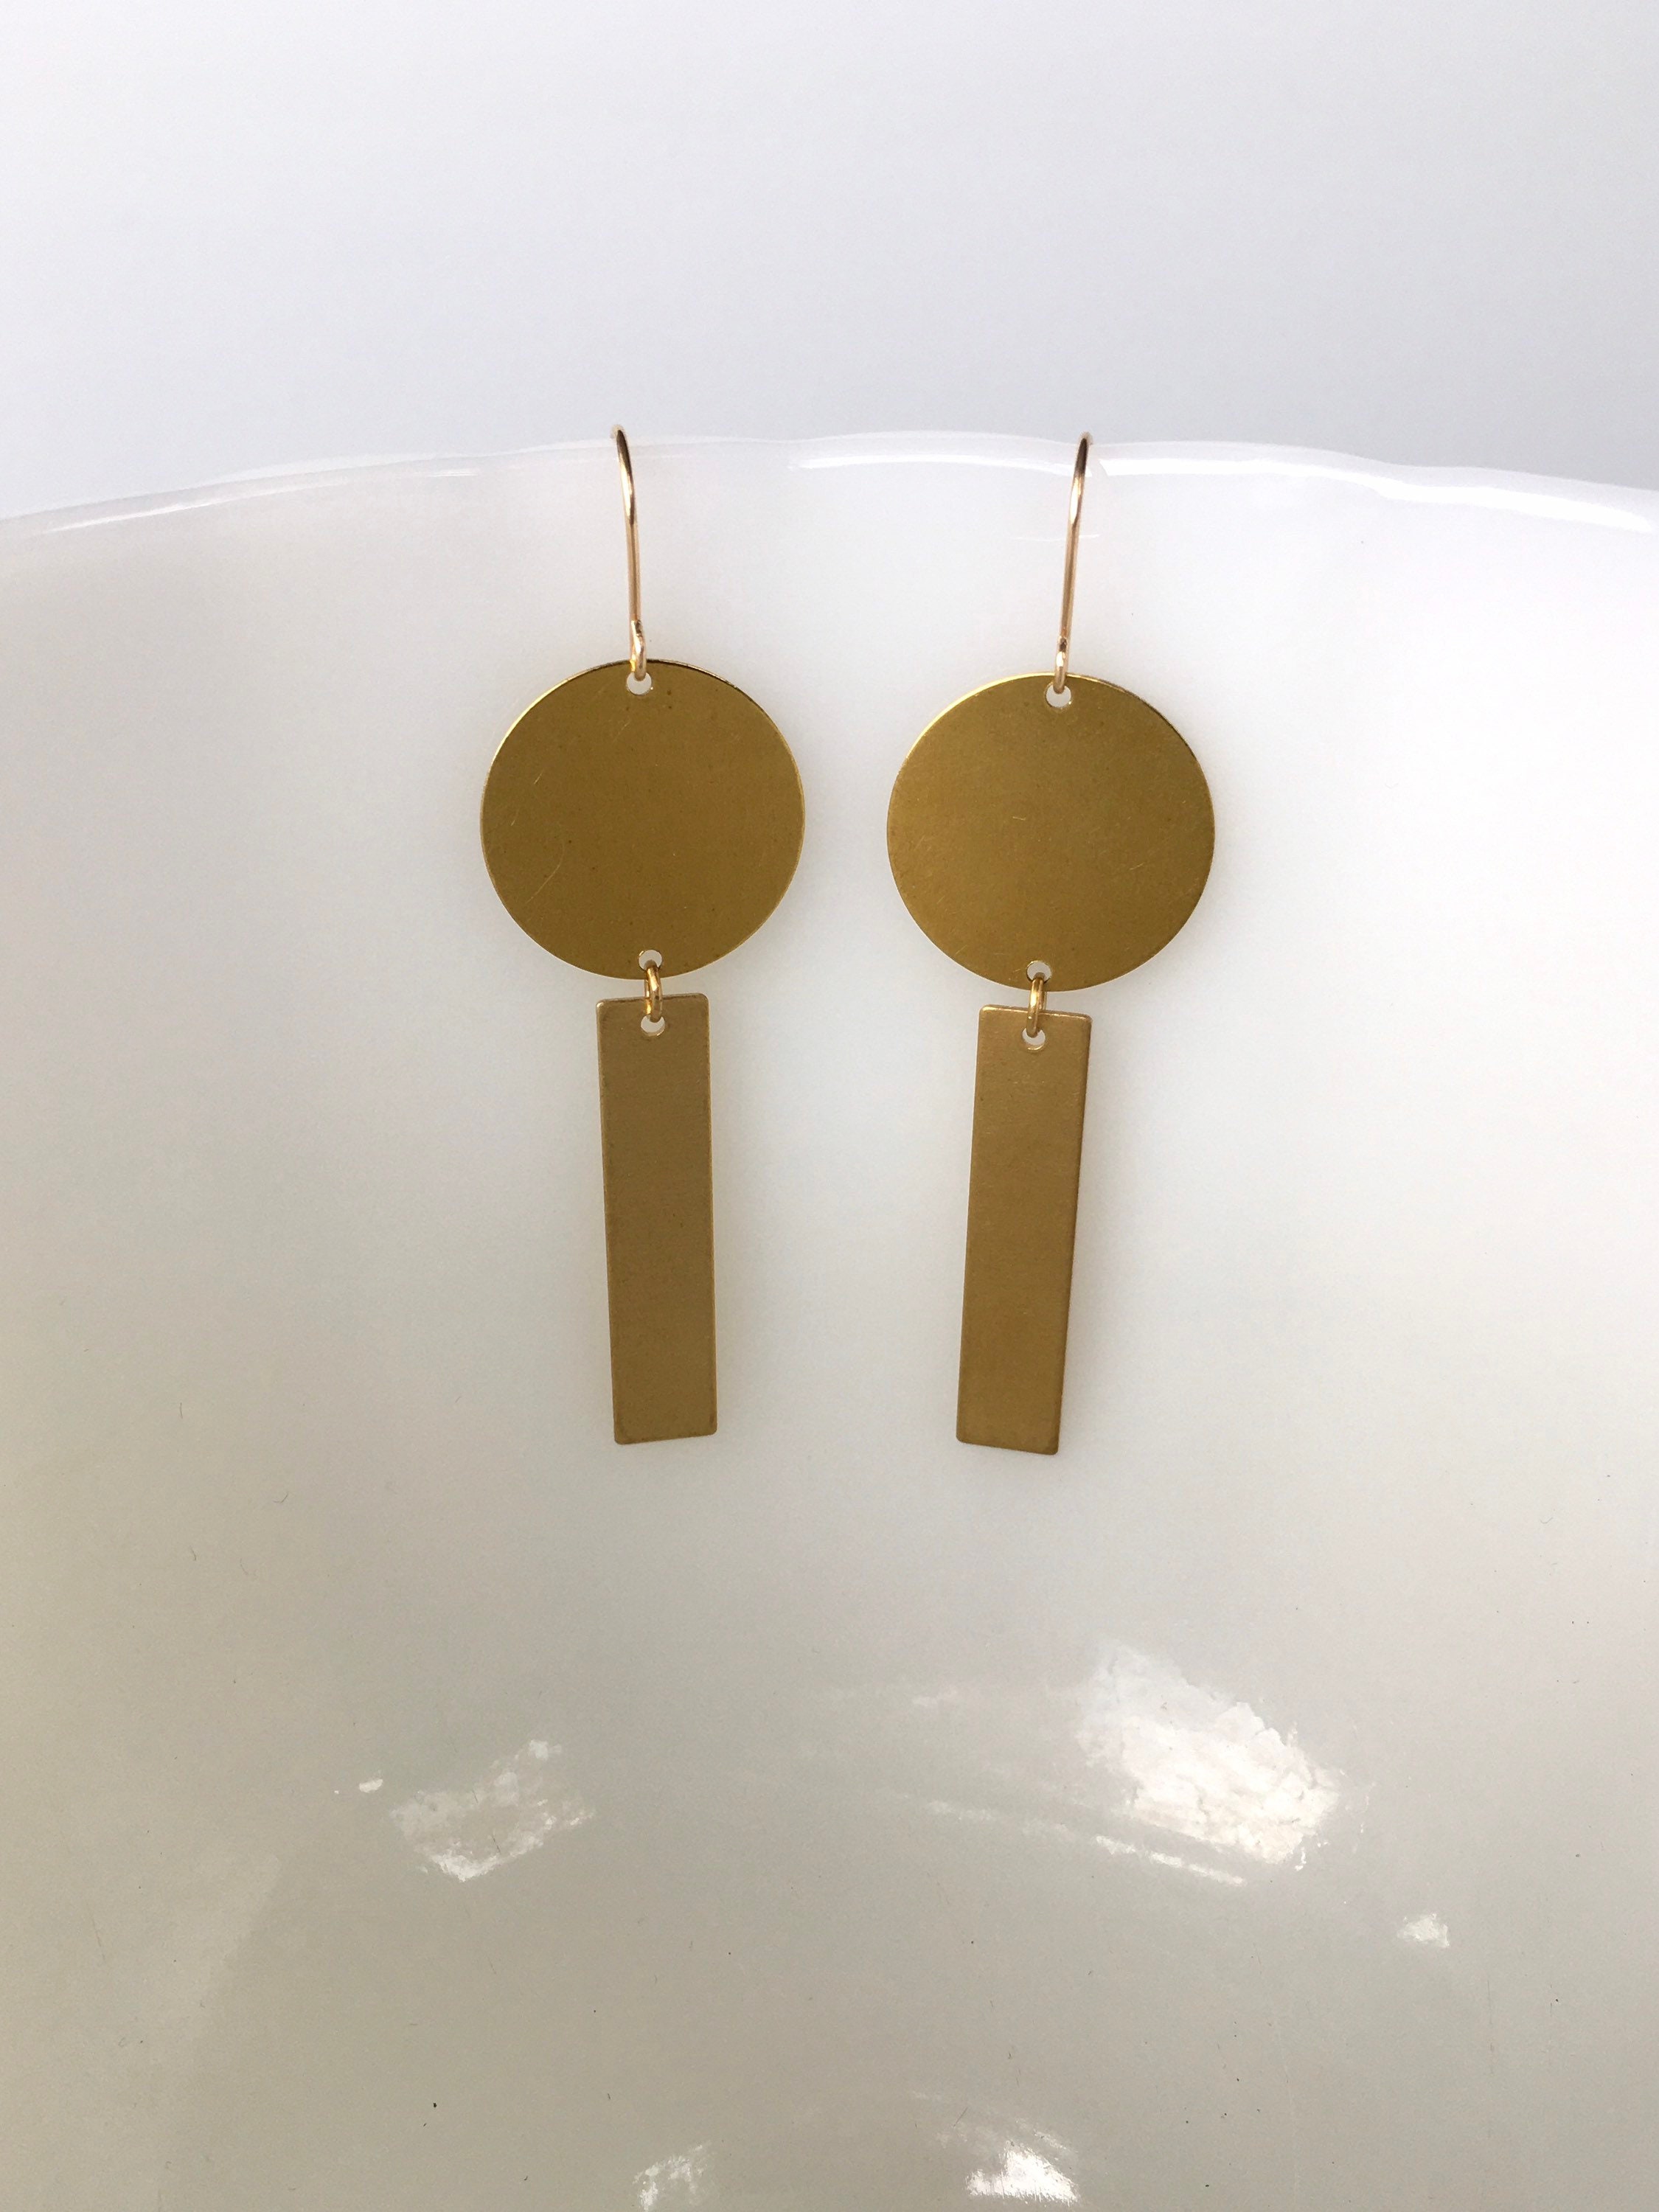 SYDNEY Brass Earrings Modern Gold Semi Circle Bar Earrings | Etsy